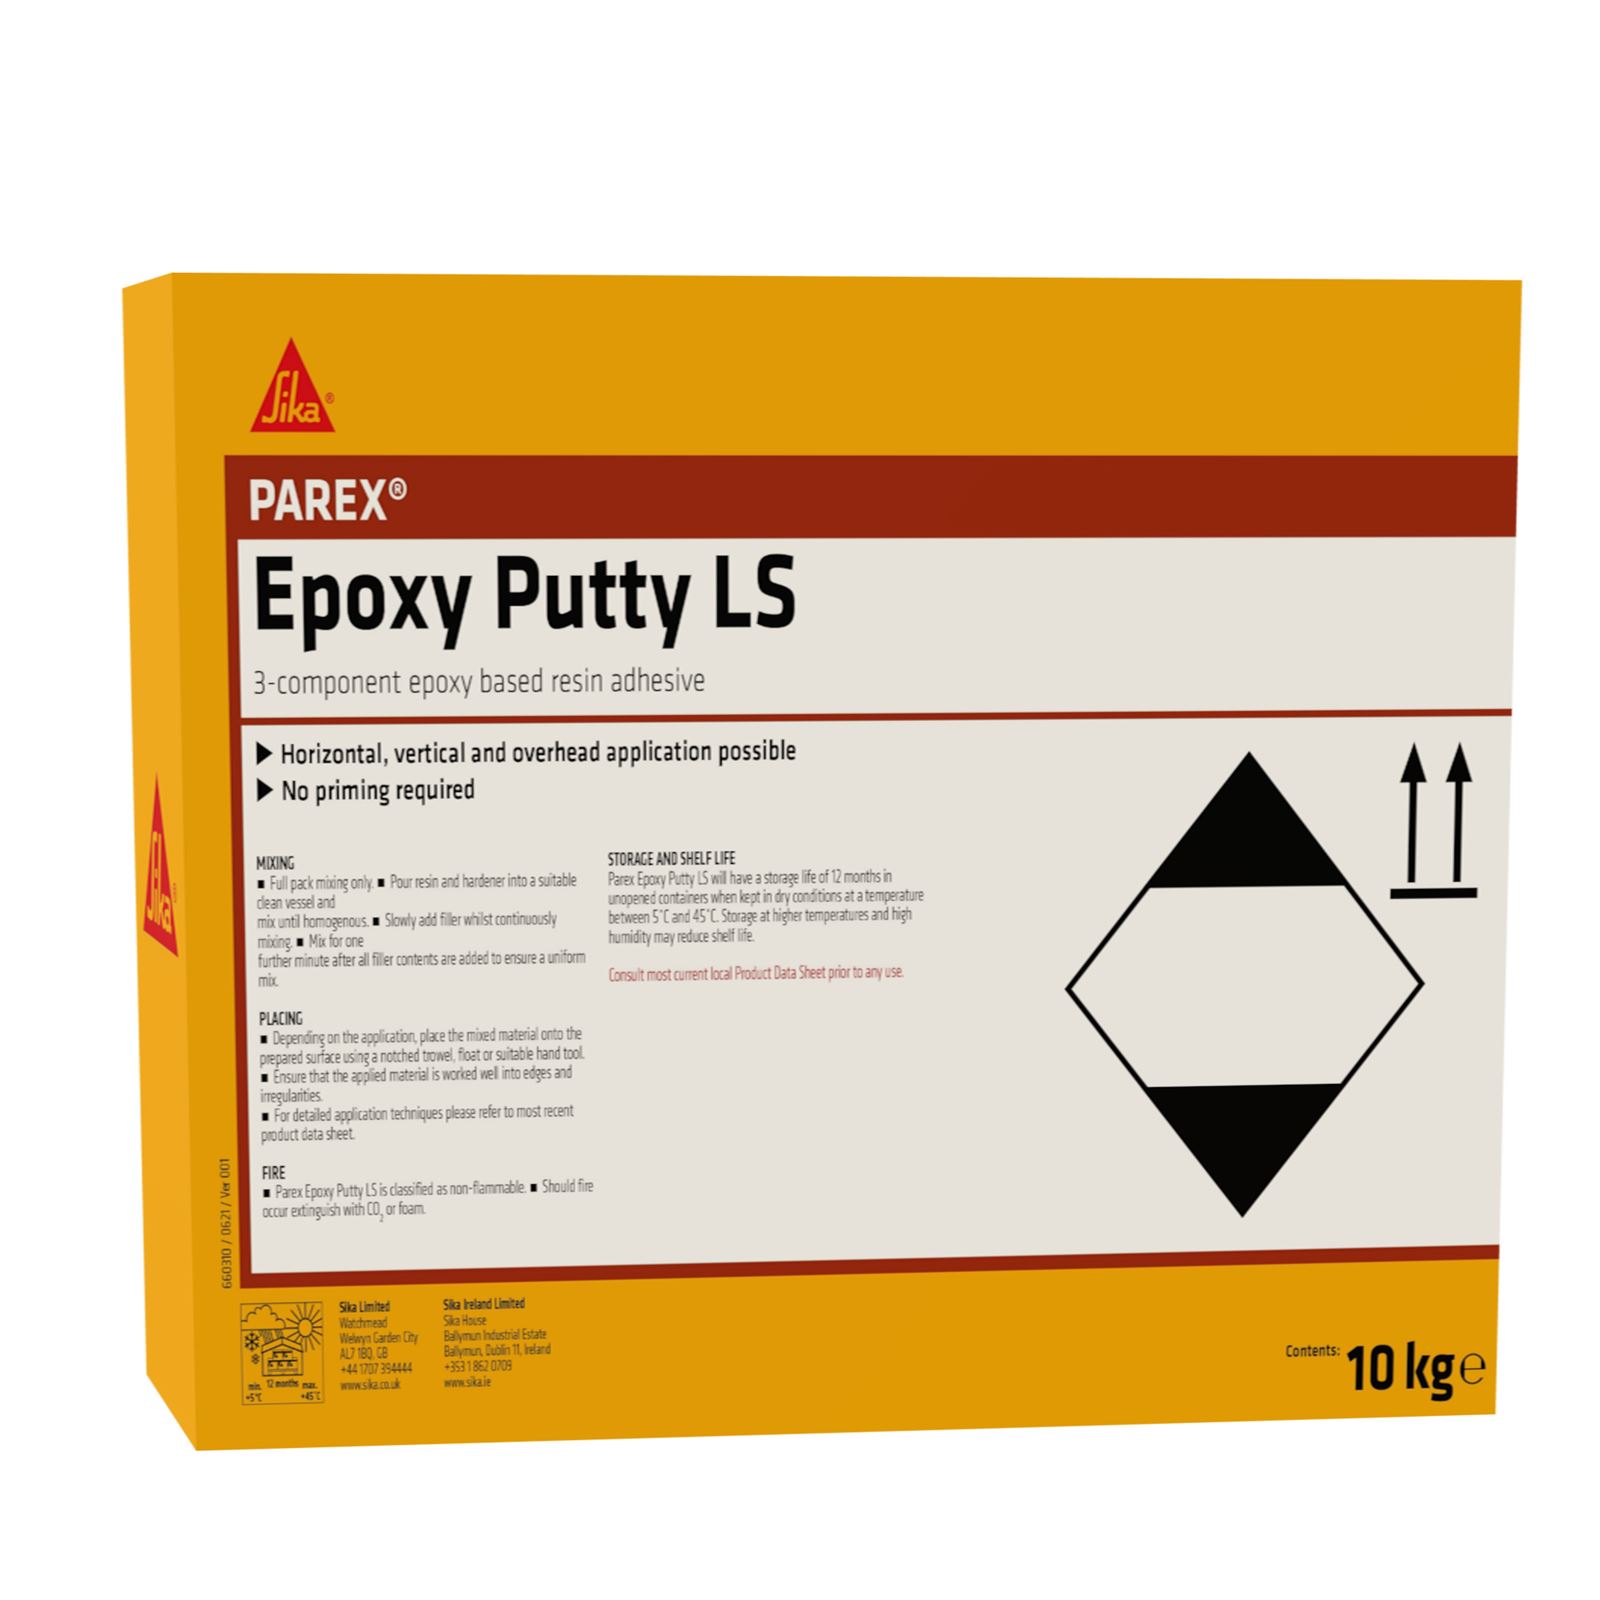 Parex Epoxy Putty LS